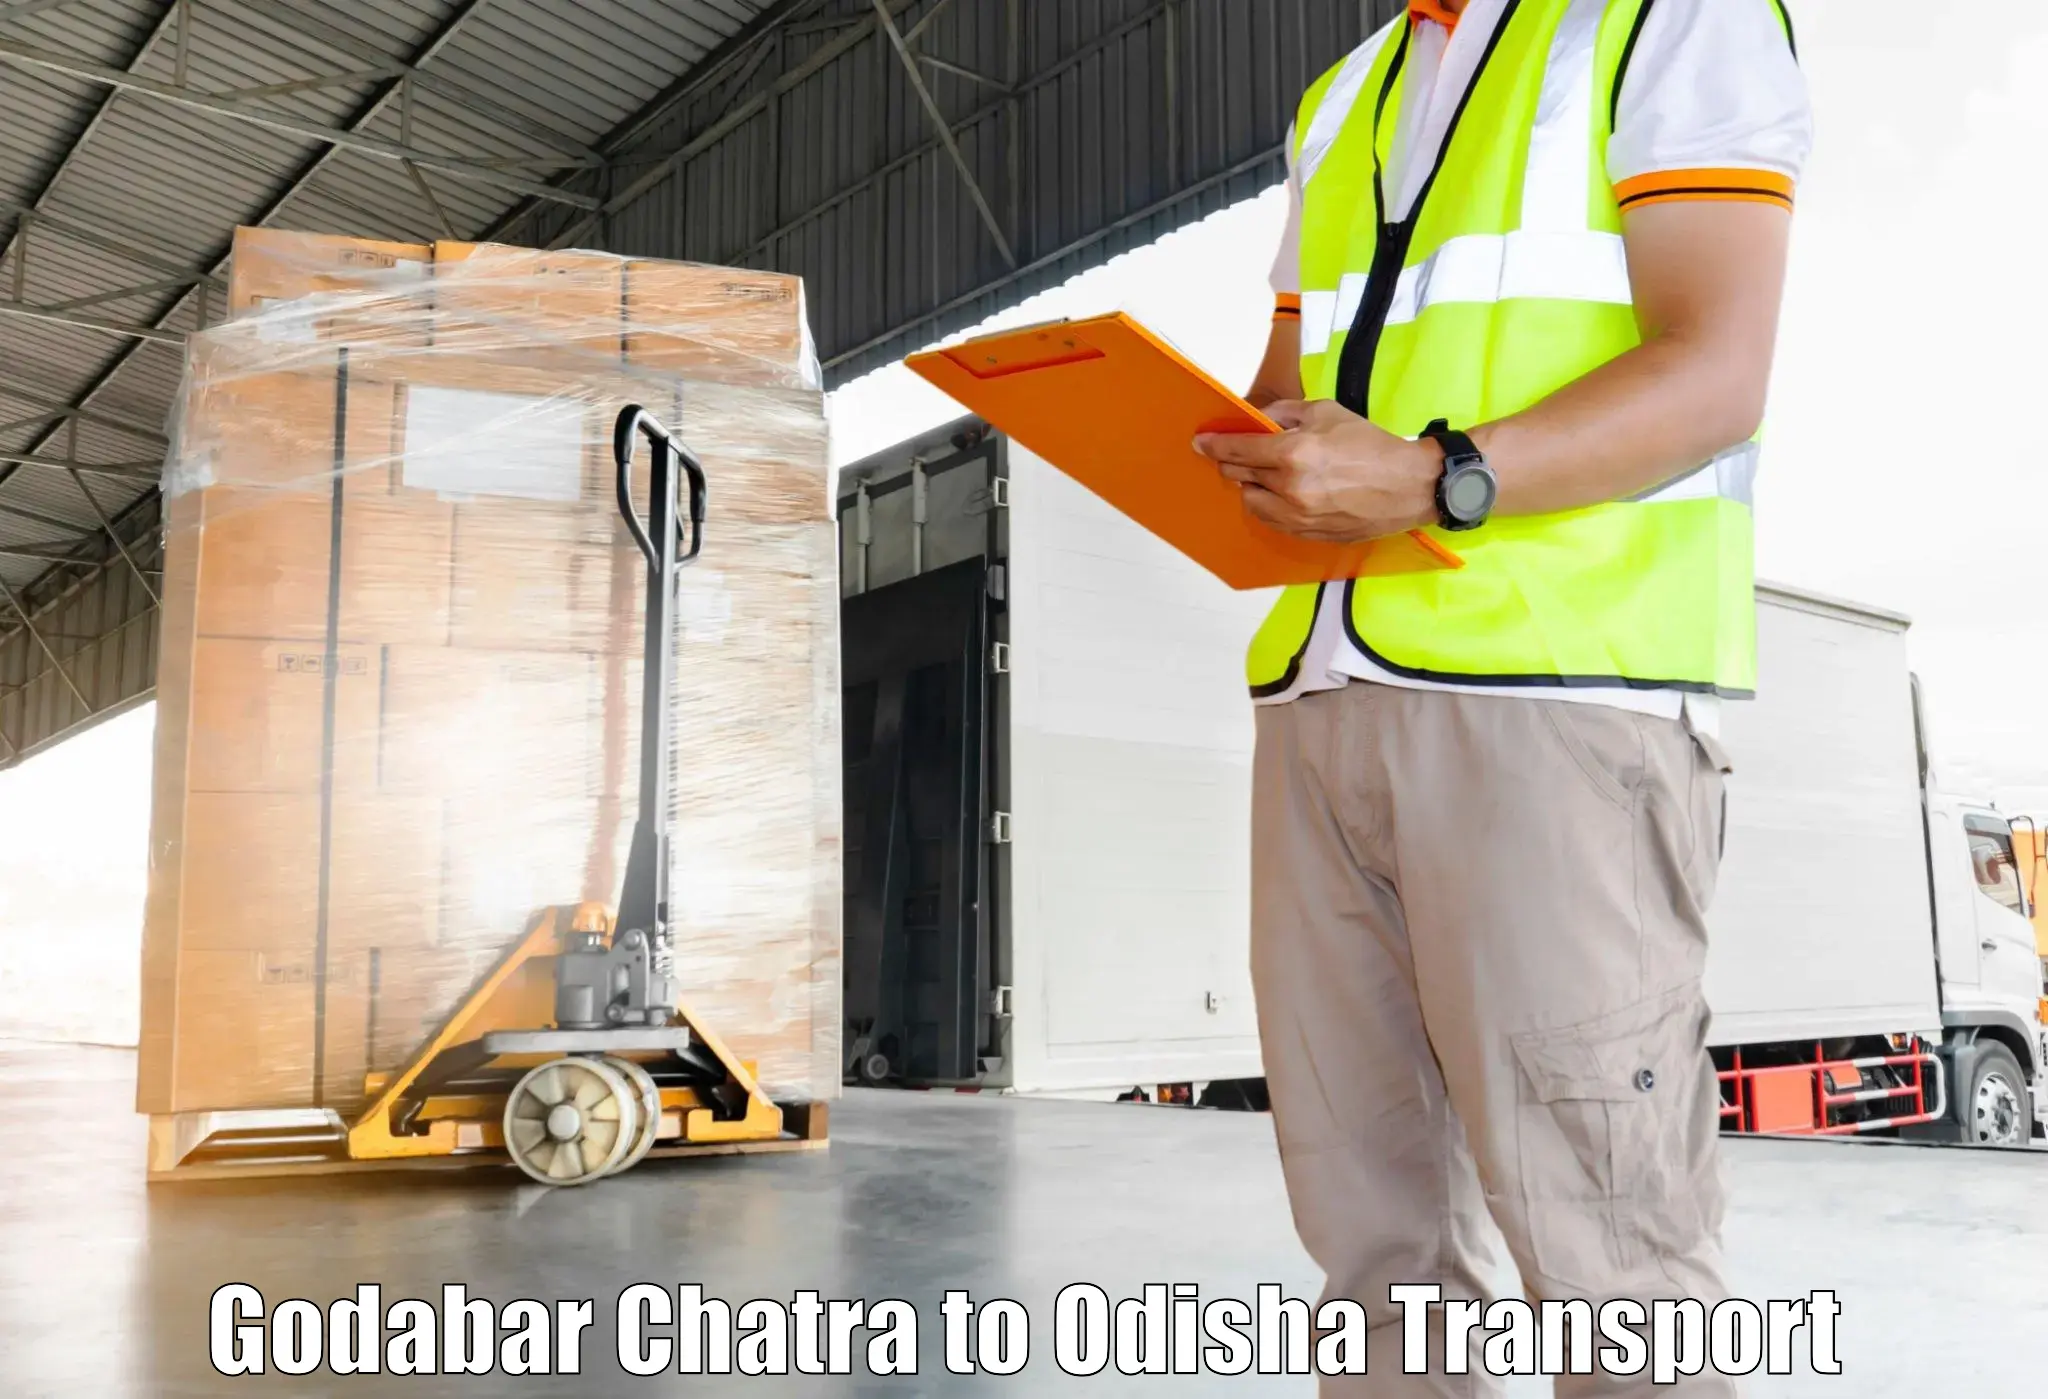 Vehicle transport services Godabar Chatra to Raikia